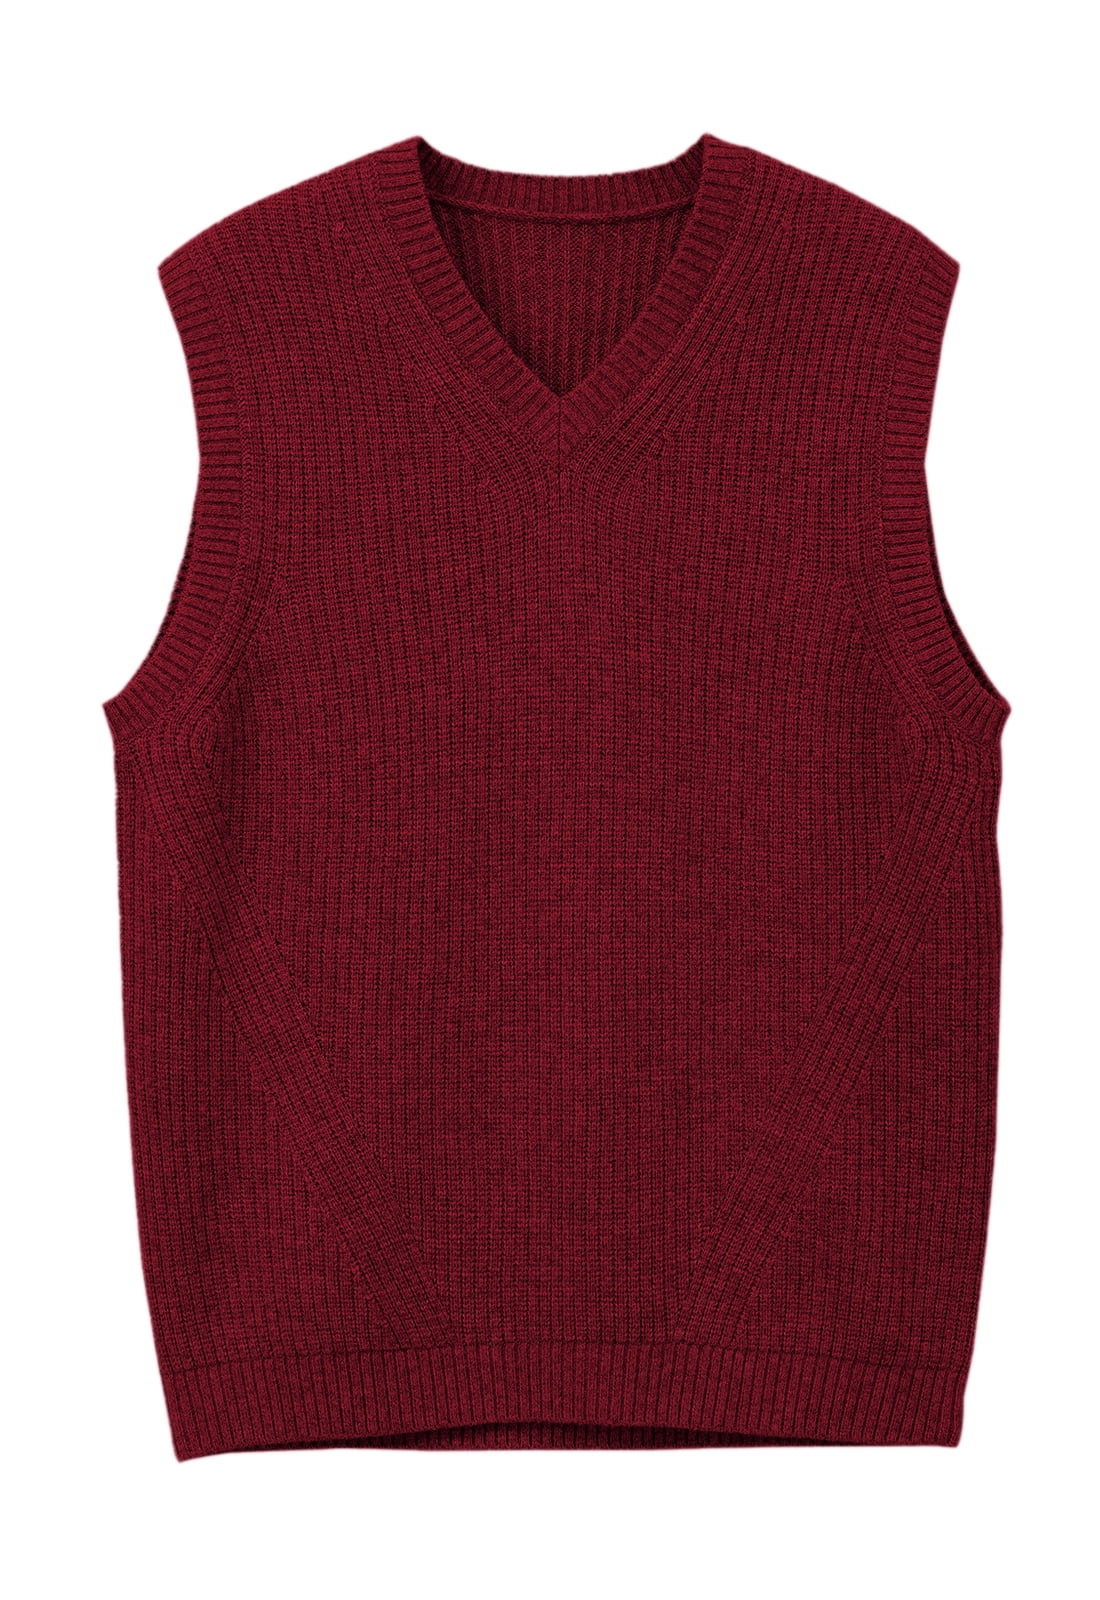 geleider Guinness gerucht Mens V-Neck Knitted Sweater Vest Solid Plain Sleeveless Pullover -  Walmart.com